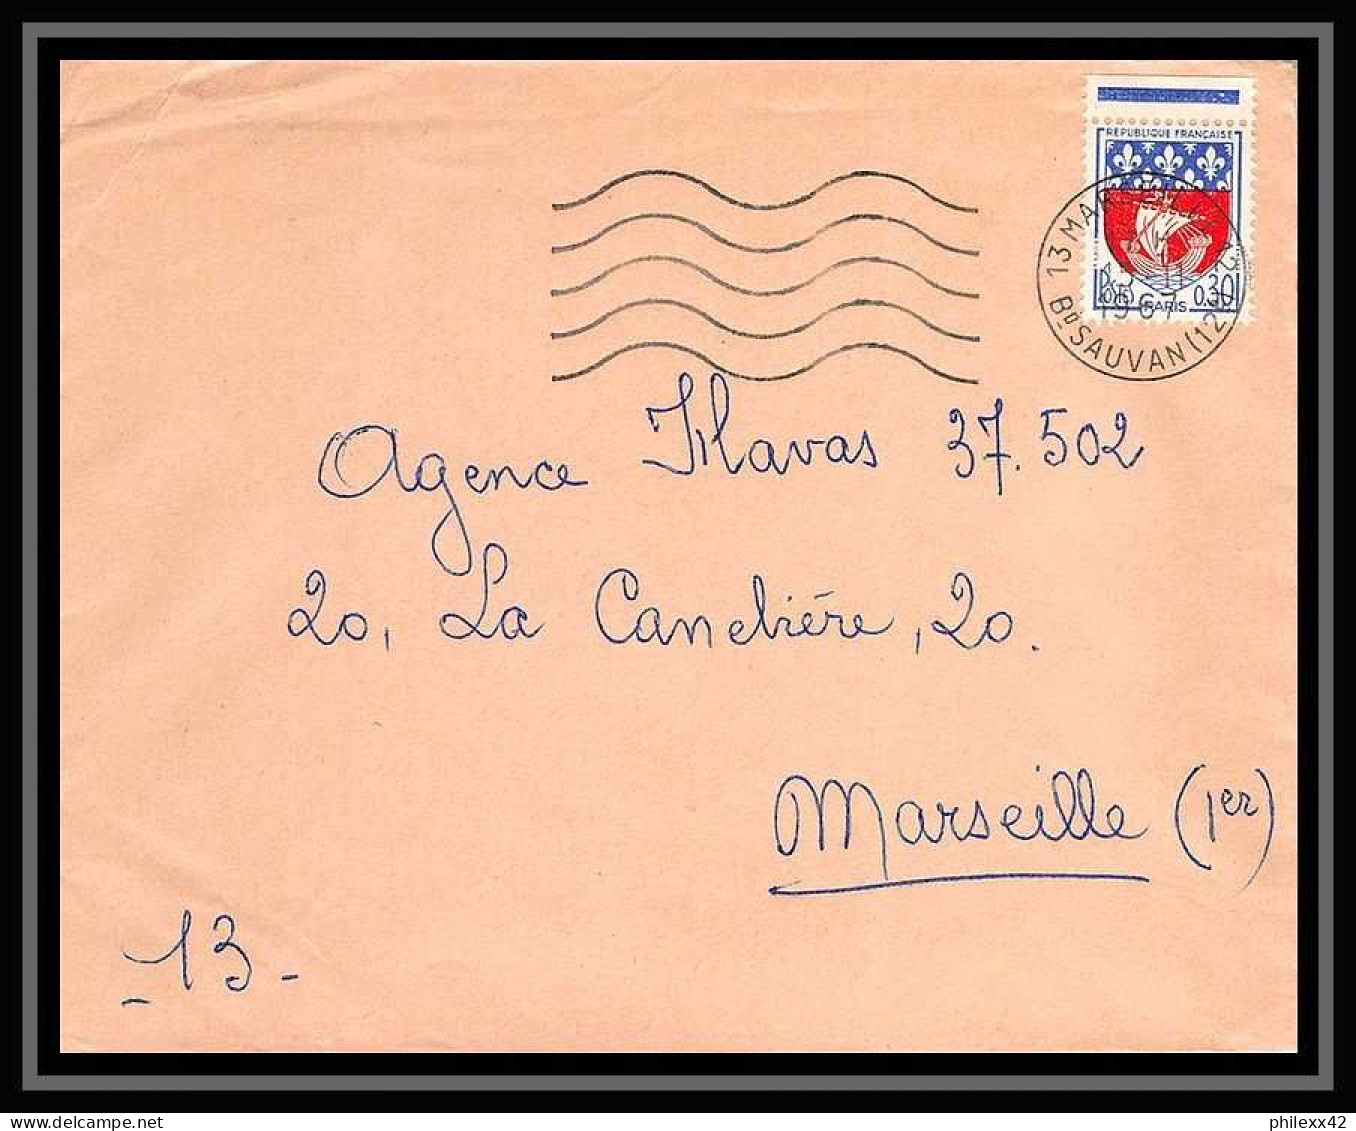 110730 lot de 14 Lettres Bouches du rhone Marseille Boulevard sauvan 